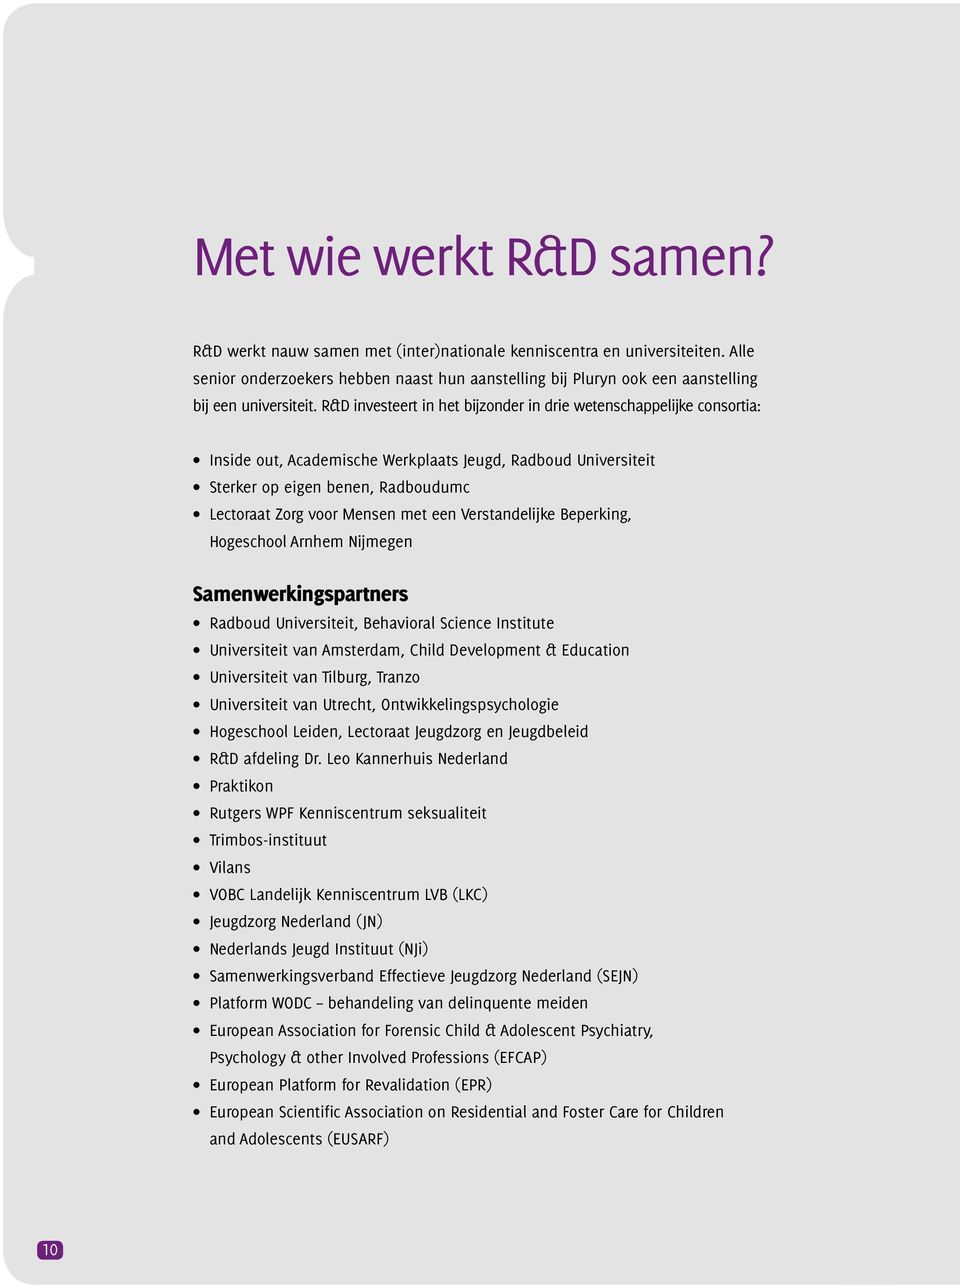 R&D investeert in het bijzonder in drie wetenschappelijke consortia: Inside out, Academische Werkplaats Jeugd, Radboud Universiteit Sterker op eigen benen, Radboudumc Lectoraat Zorg voor Mensen met